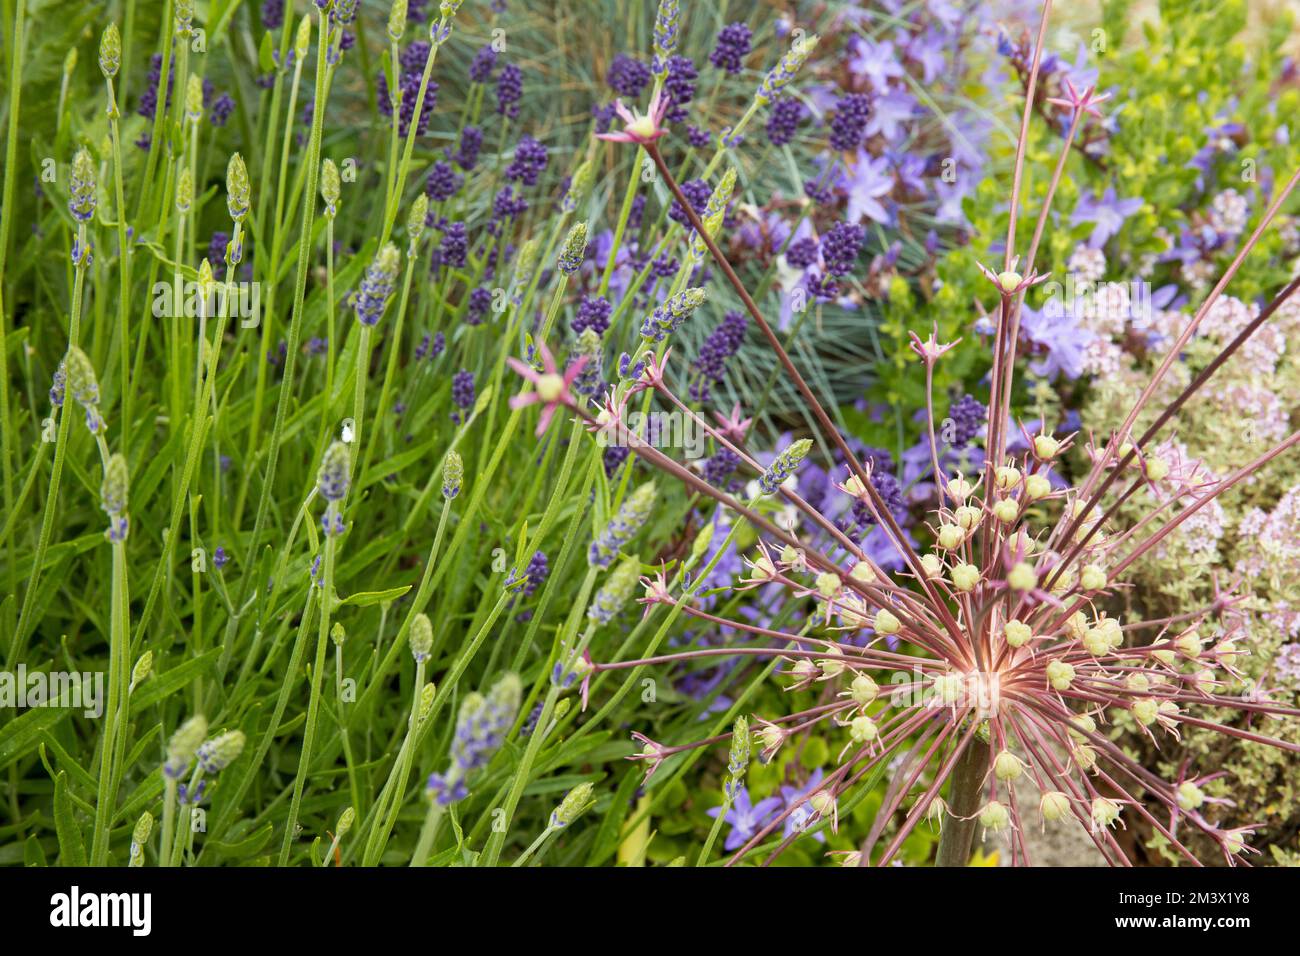 Allium schubertii fleurit entre Lavender et Campanula dans un lit 'méditerranéen' surélevé dans un jardin. Powys, pays de Galles. Juin. Banque D'Images